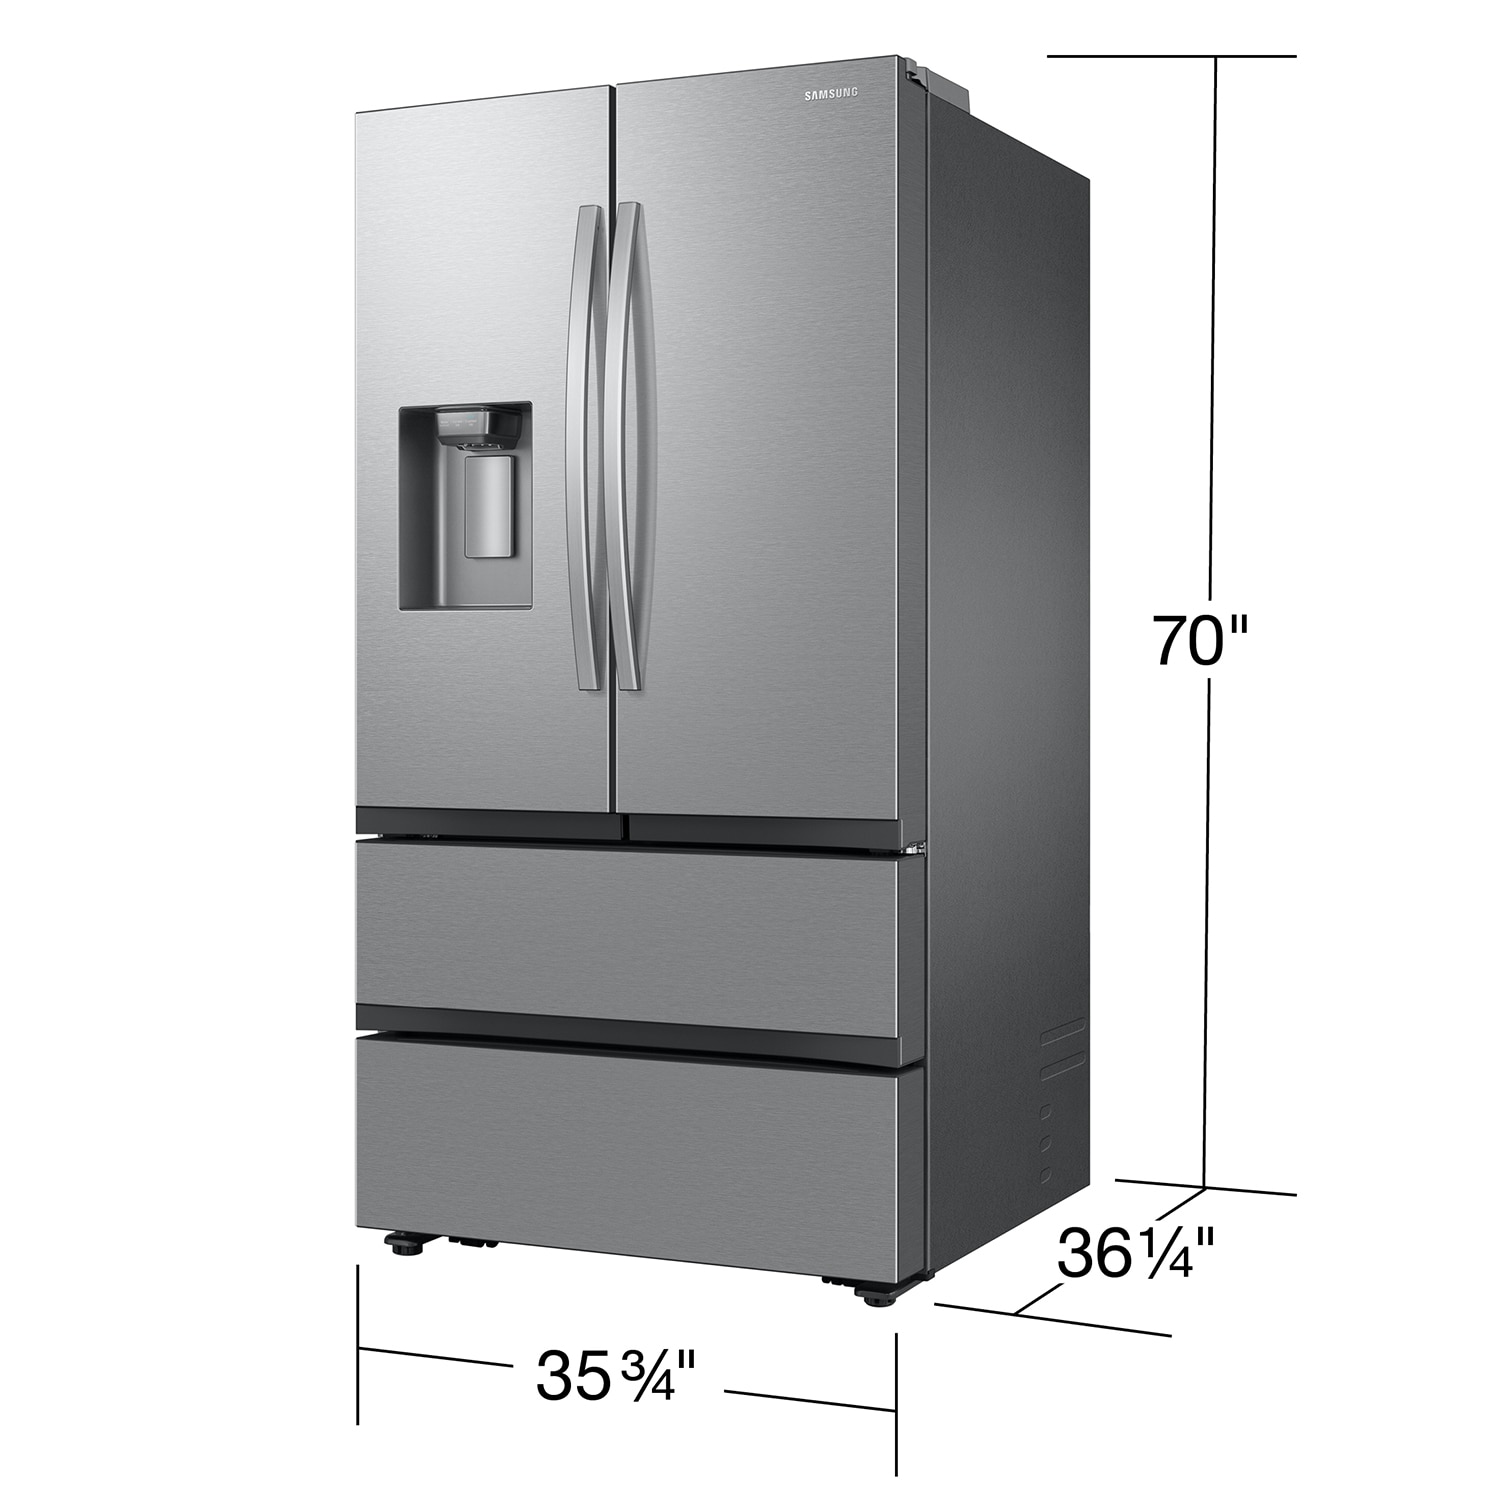 Samsung 36 4-door Flex French Door,Refrigerator,Stainless Steel,Full S –  APPLIANCE BAY AREA